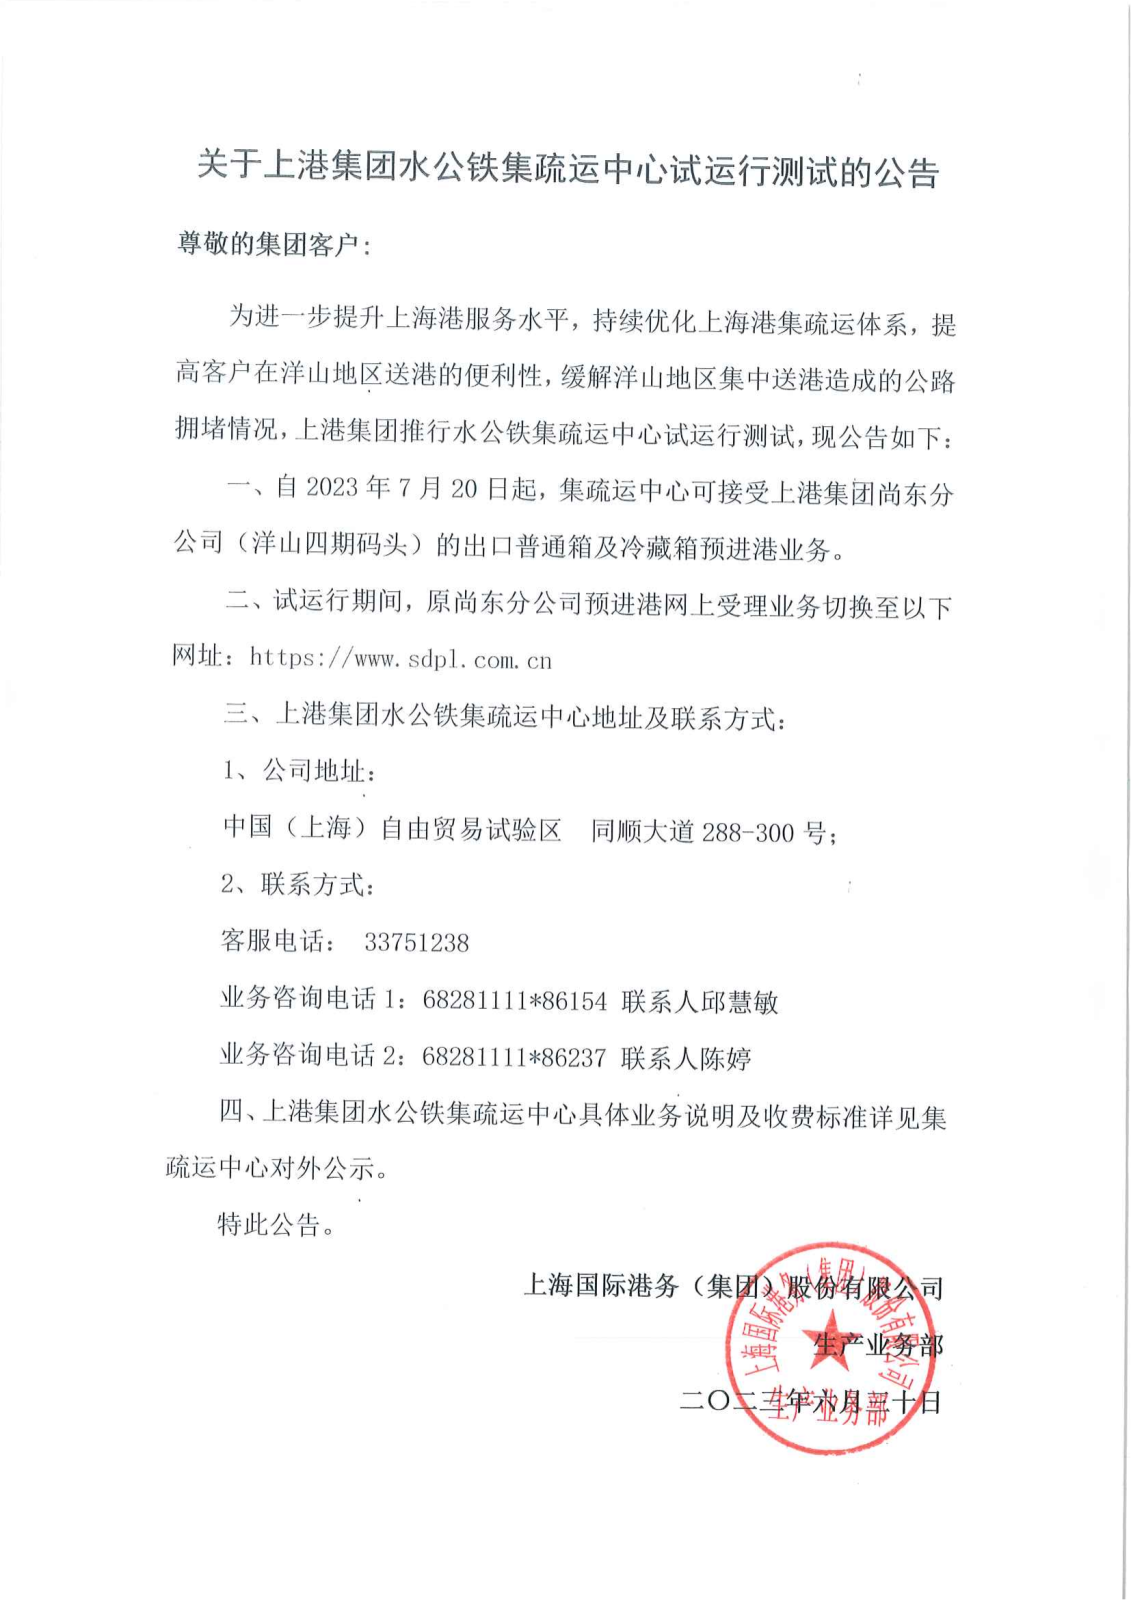 关于上港集团水公铁集疏运中心试运行测试的公告_00.png